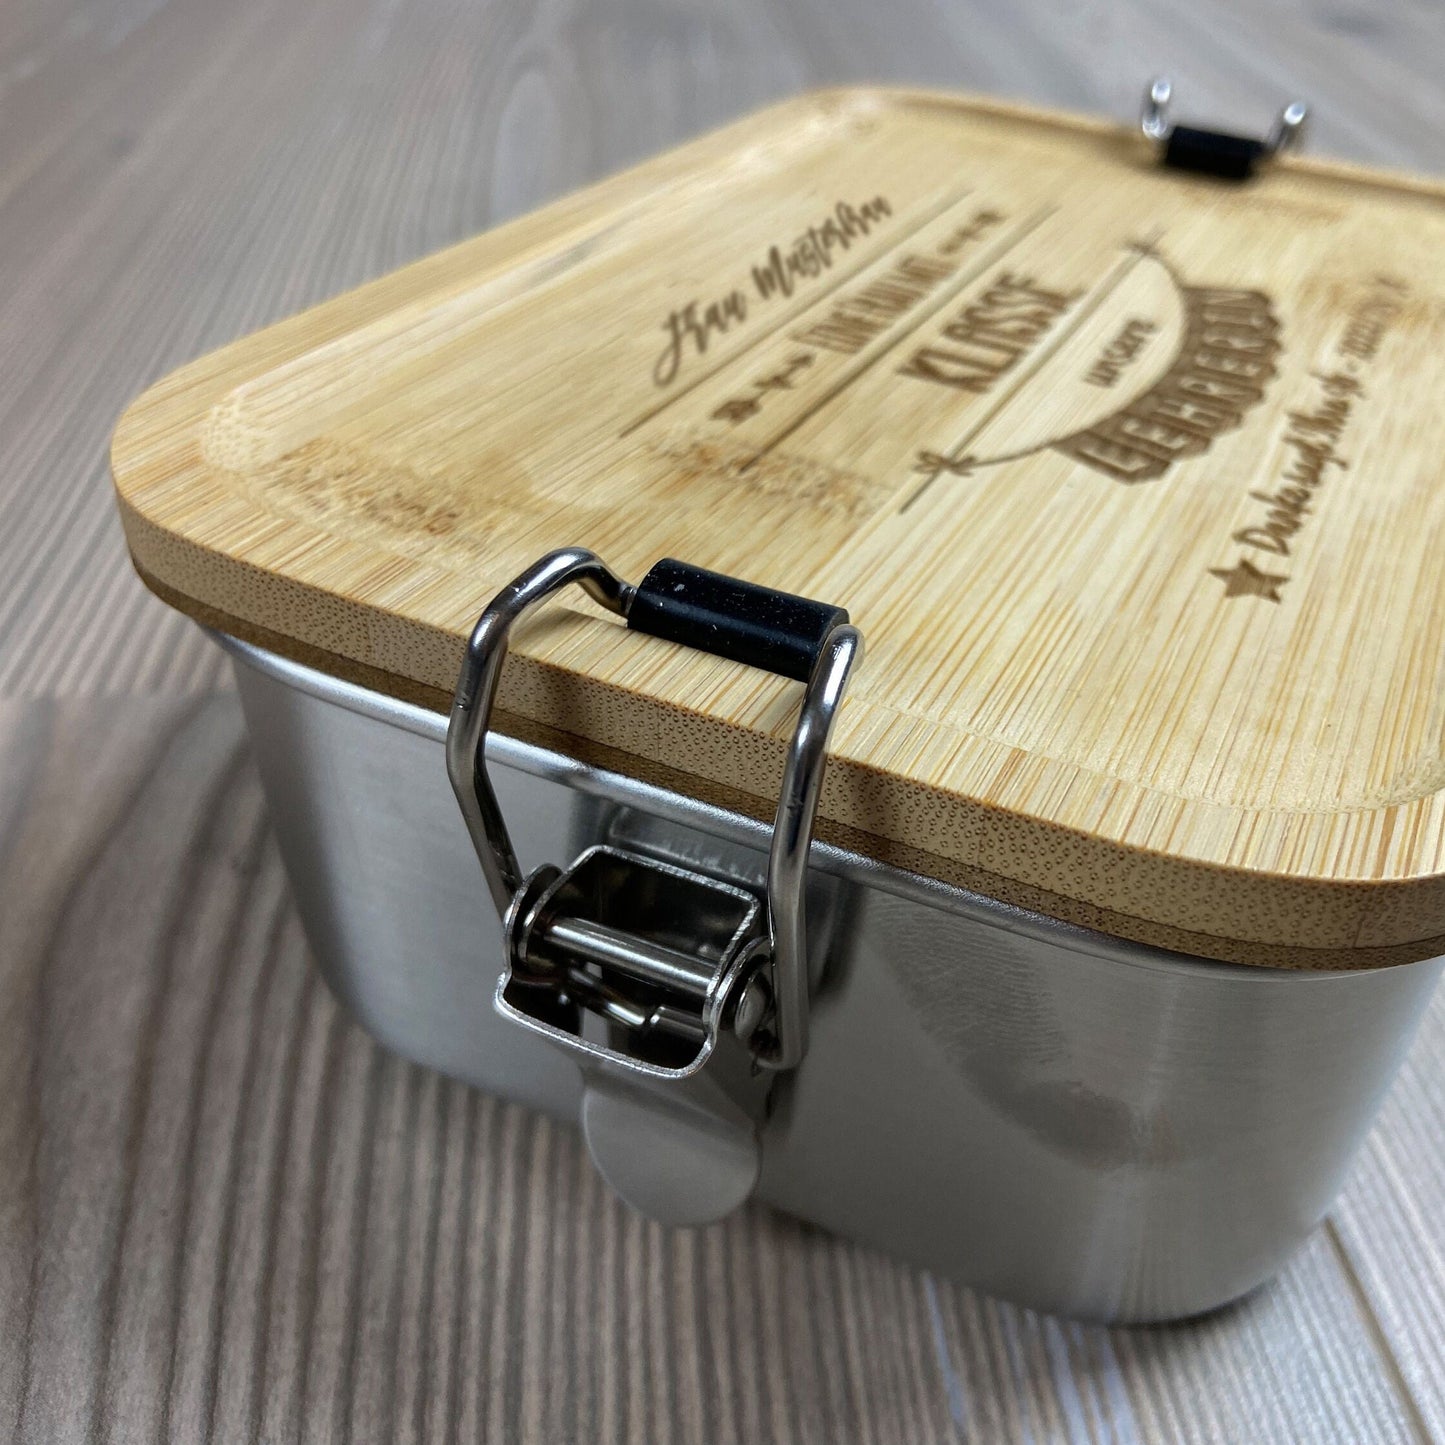 Geschenk für Lehrer/Lehrerin - Lunchbox aus Edelstahl mit Bambusdeckel personalisiert mit Name und Klasse